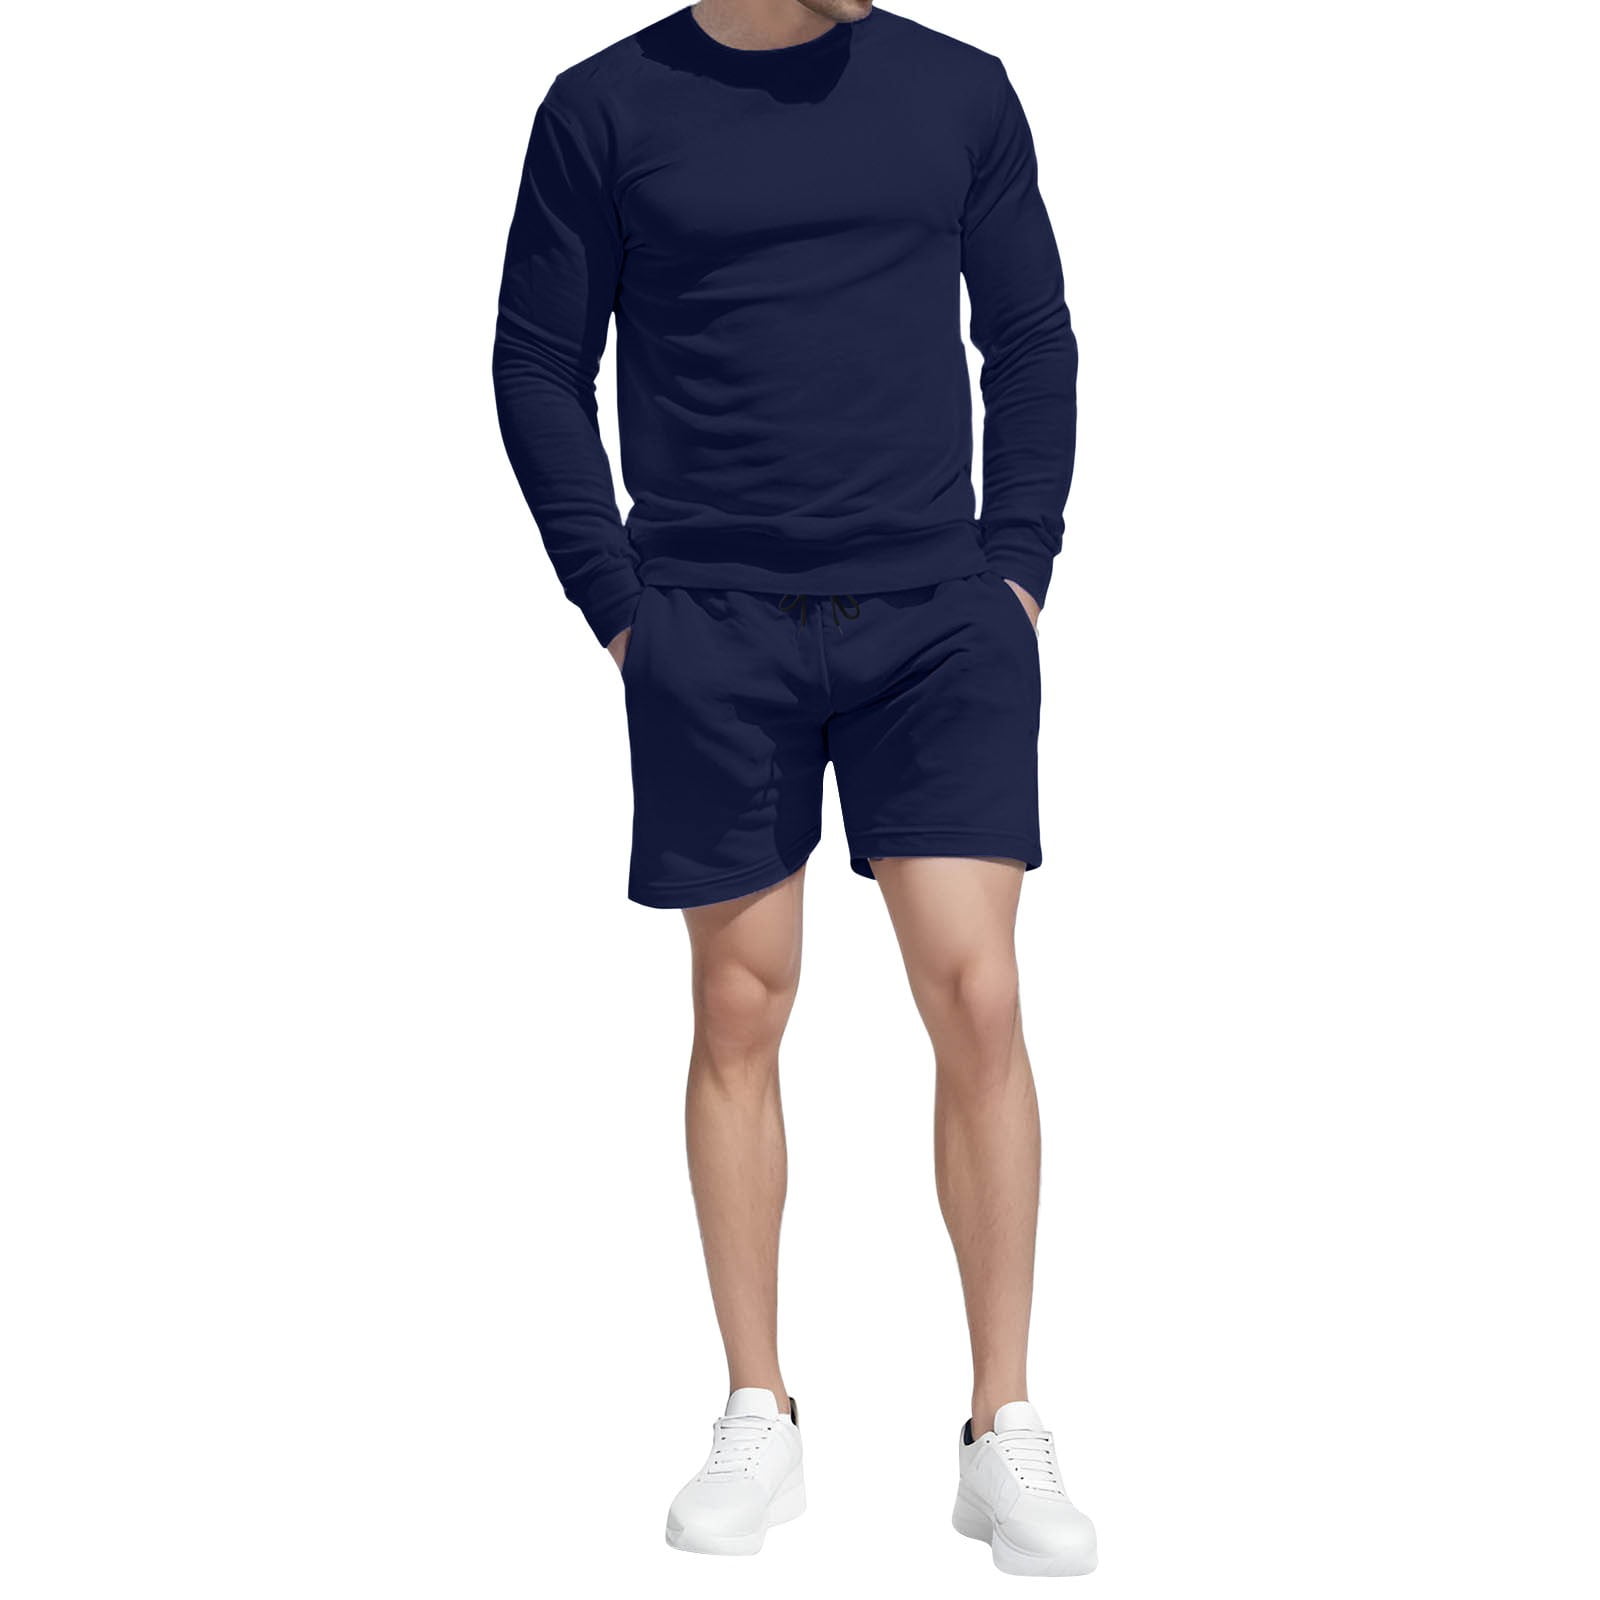 8QIDA Men's Suit Pants Slim Fit Men's Short Sleeved Shorts Two Piece ...